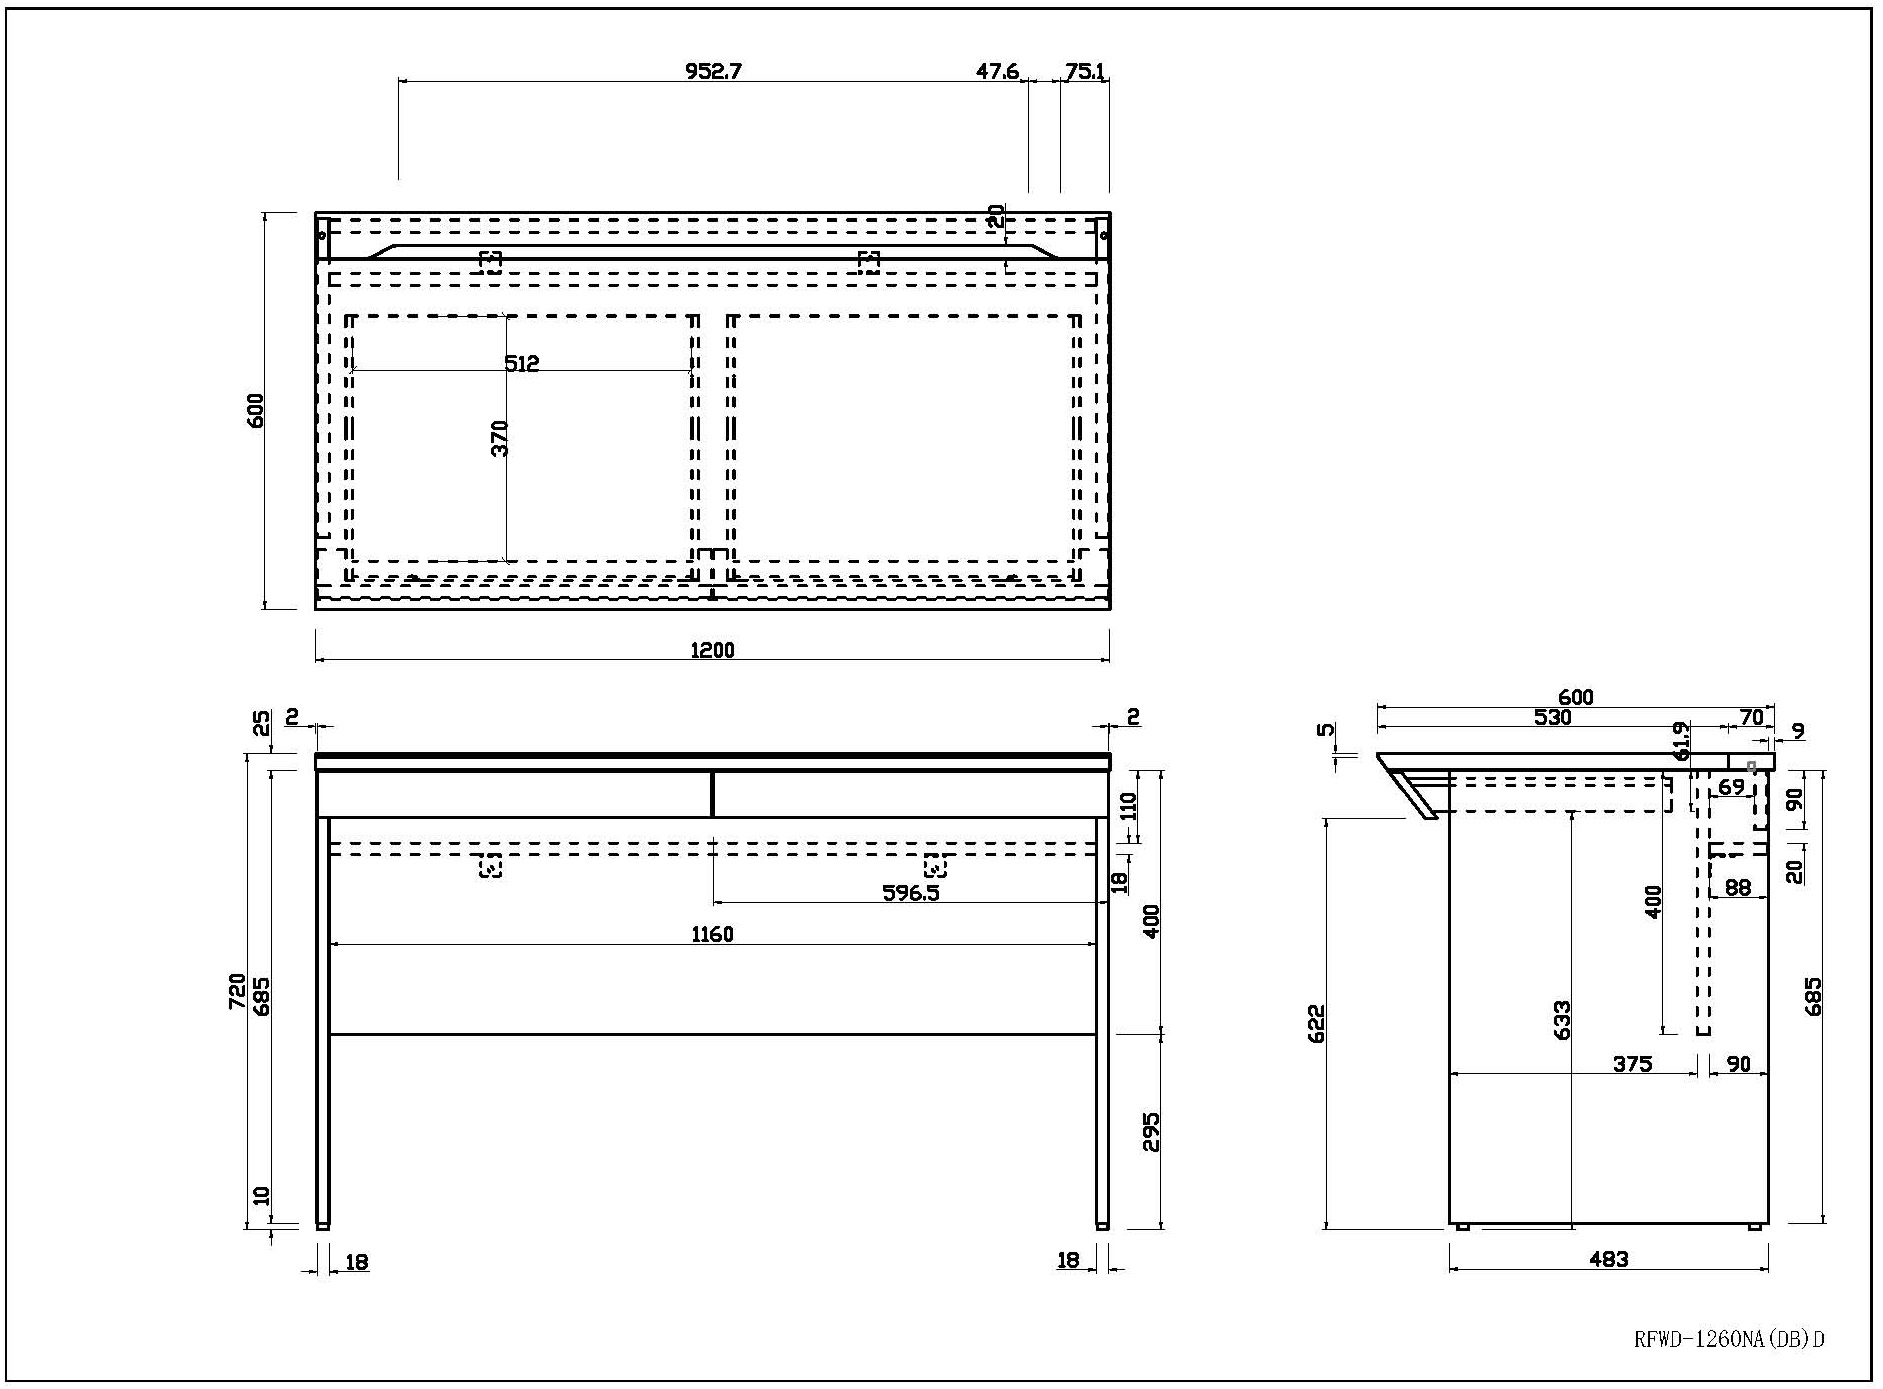 ユピタシリーズ] RF木製デスク W1200 引出付き ダーク RFWD-1260DBD | アール・エフ・ヤマカワ株式会社